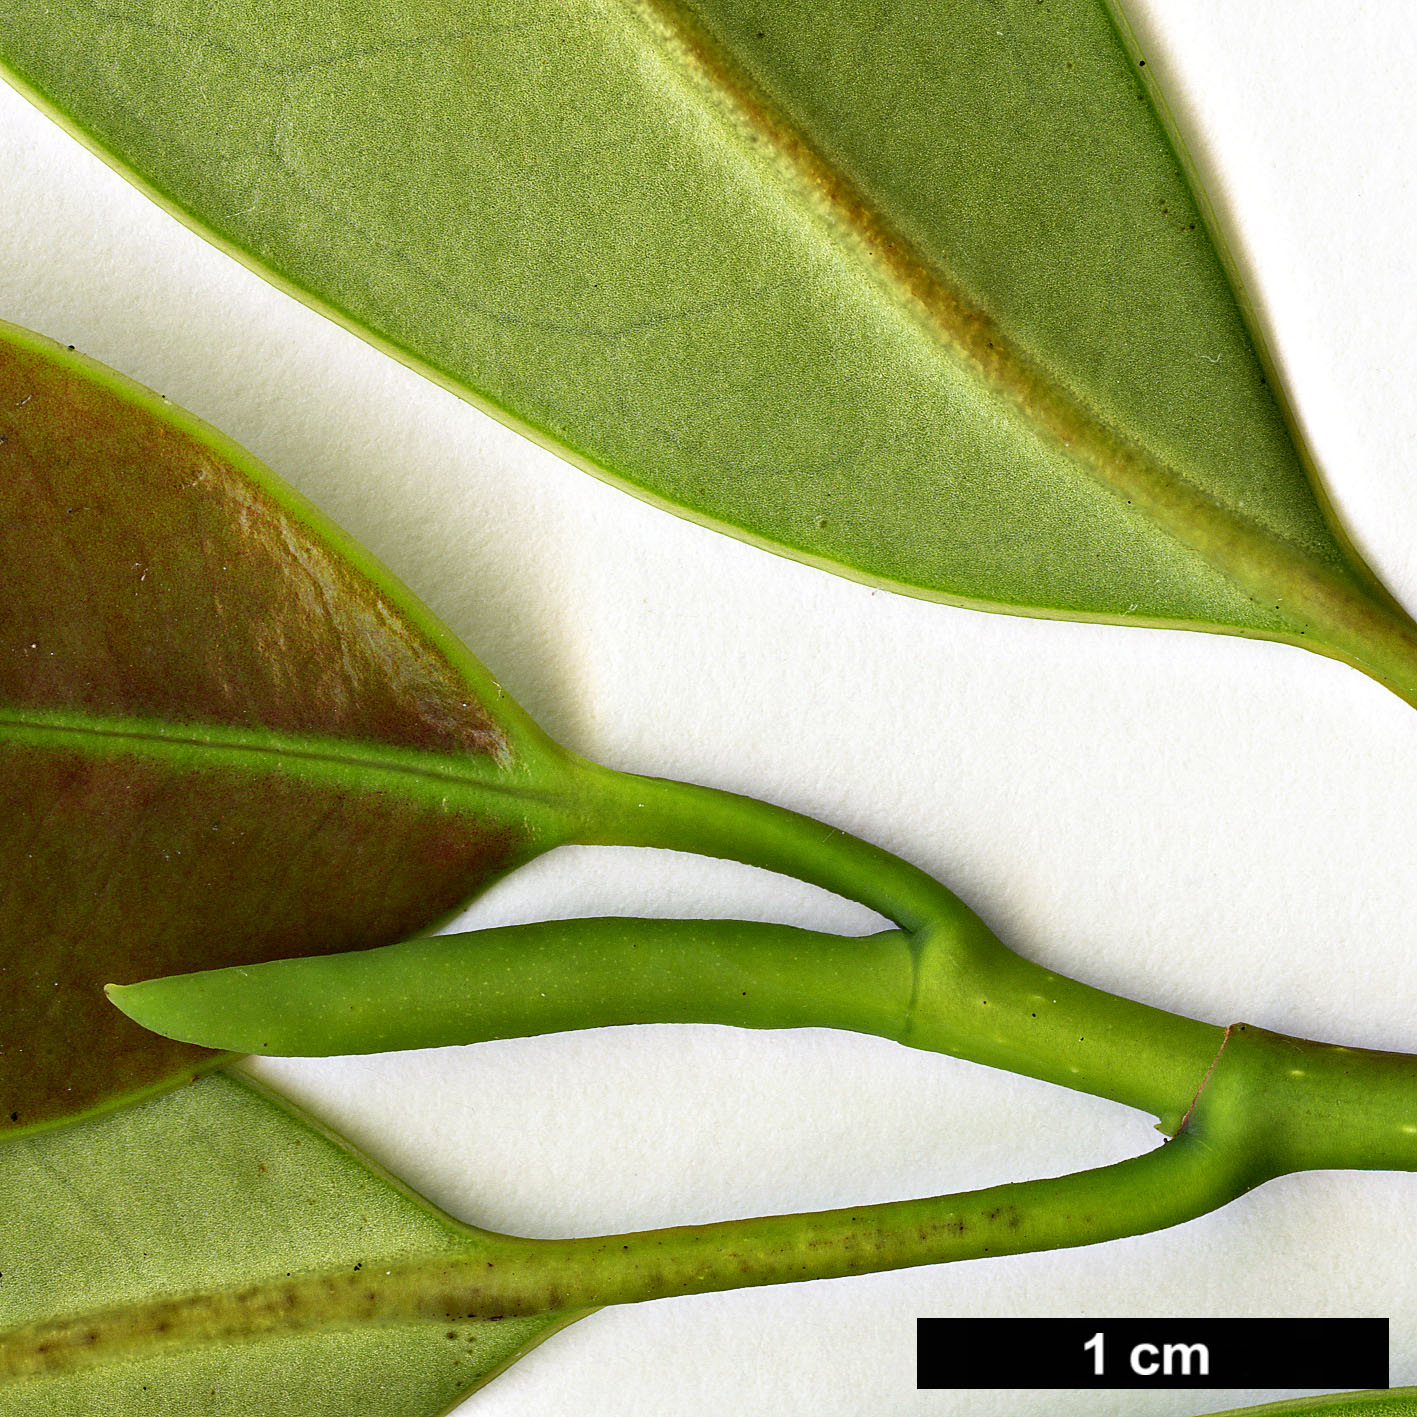 High resolution image: Family: Magnoliaceae - Genus: Magnolia - Taxon: nitida